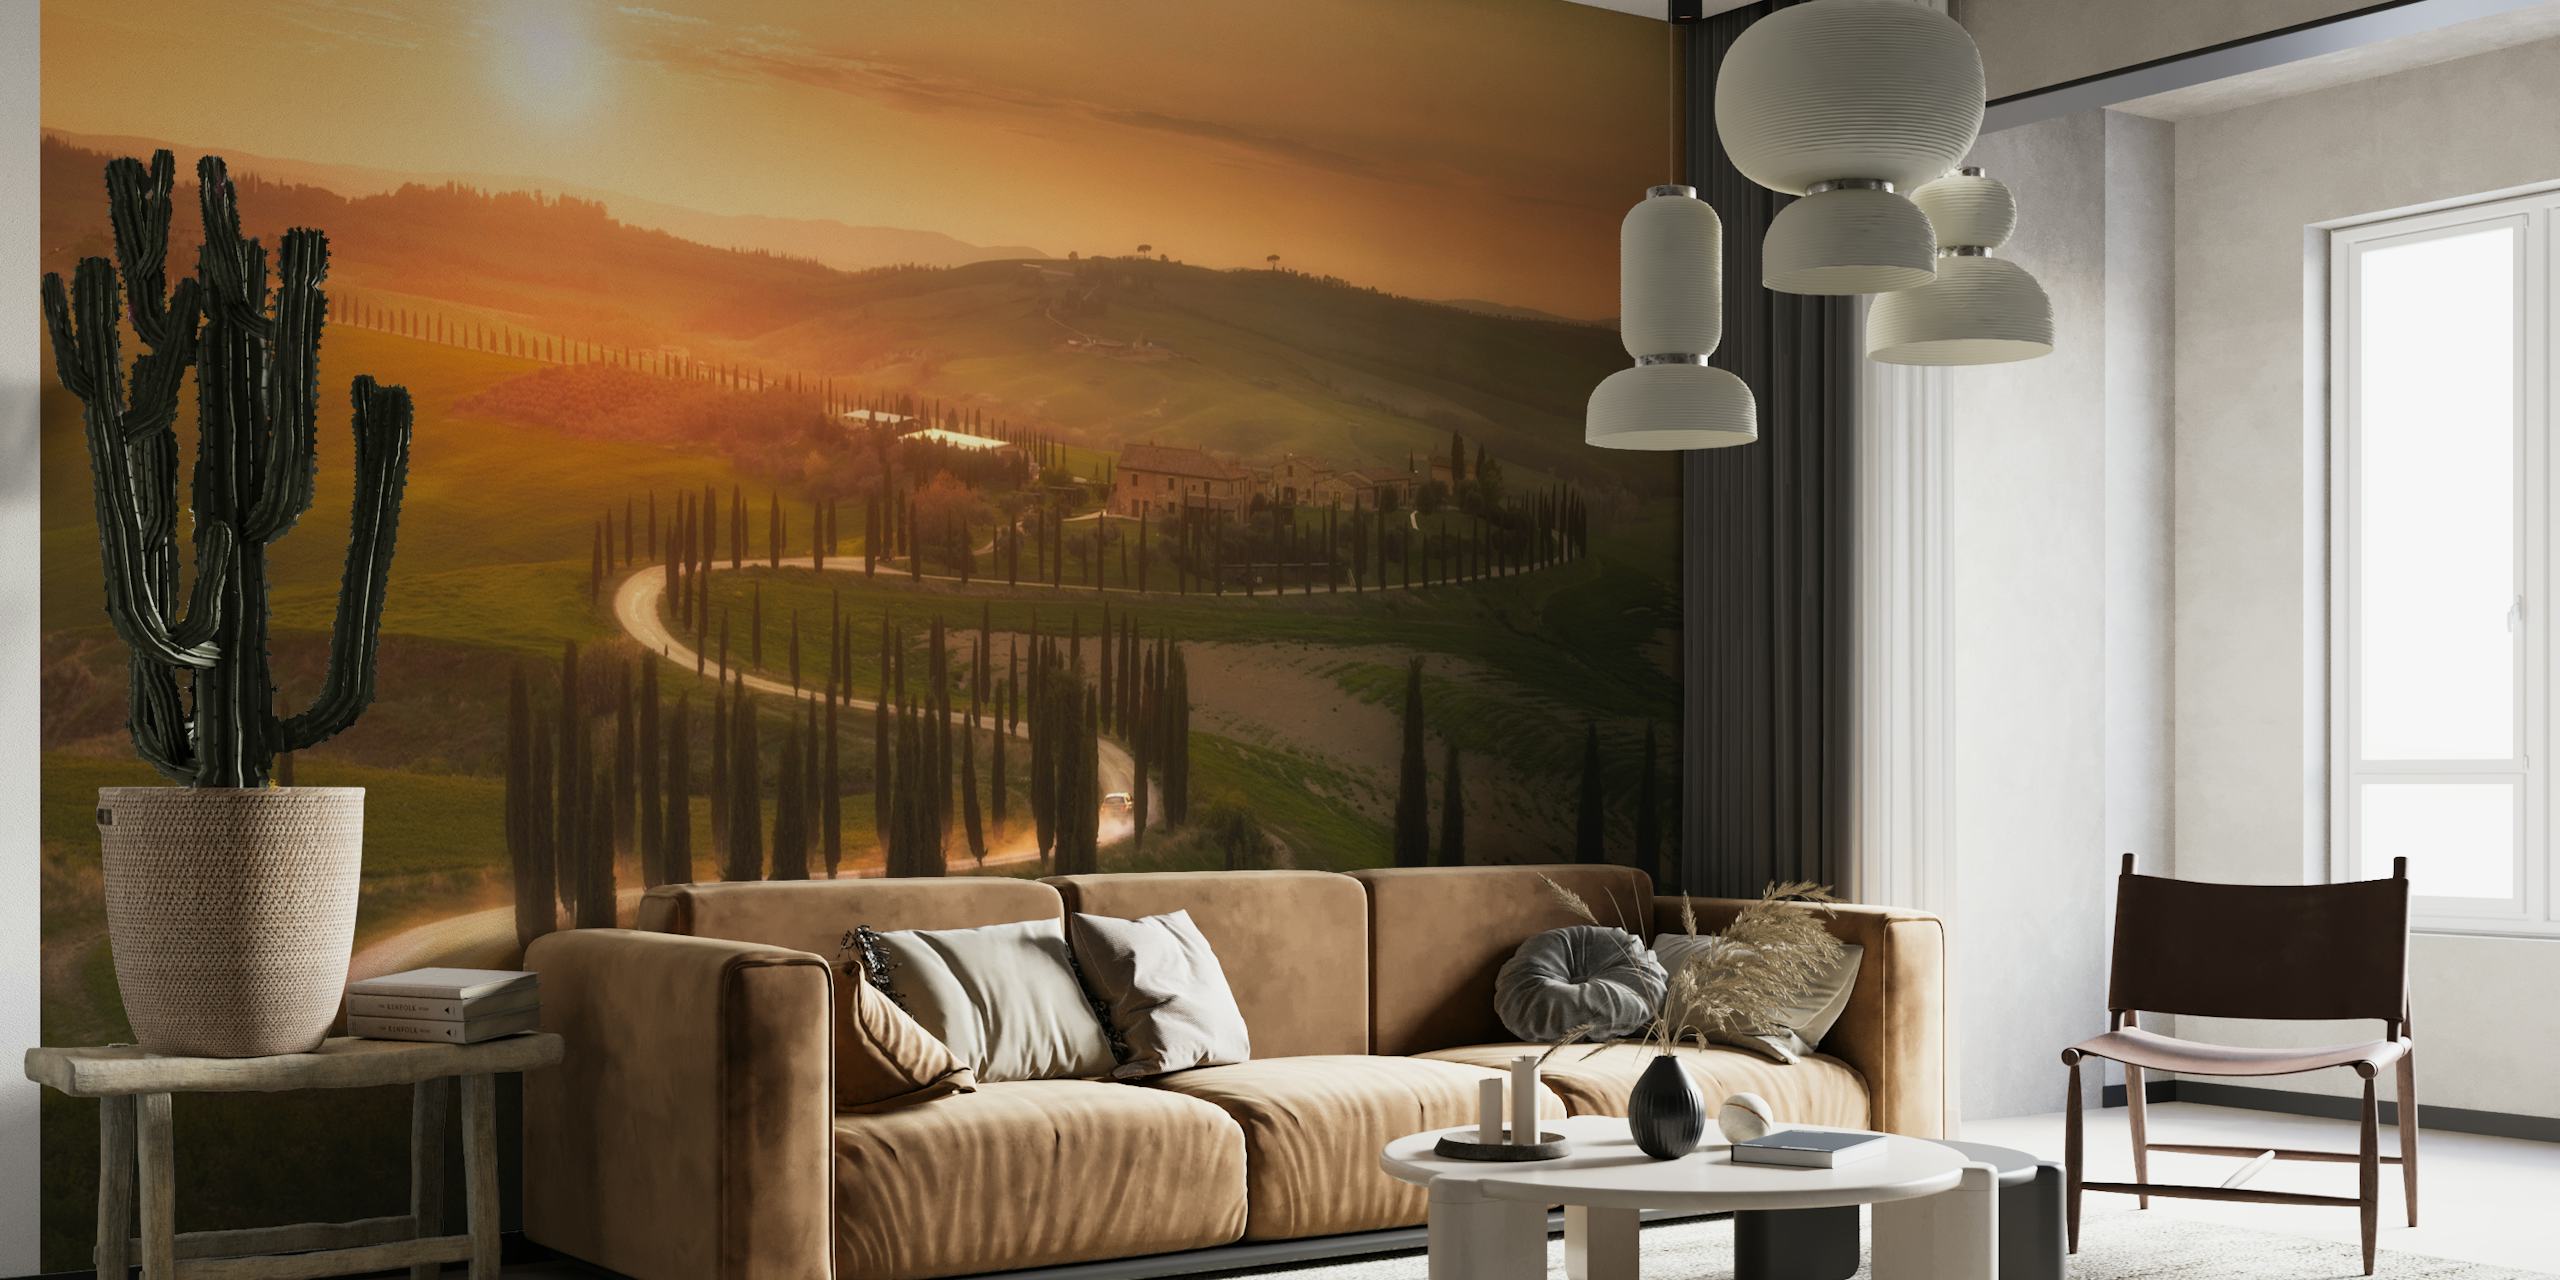 Auringonlasku Toscanan kukkuloiden seinämaalauksessa, joka kuvaa luonnonkauniista iltamaisemaa.